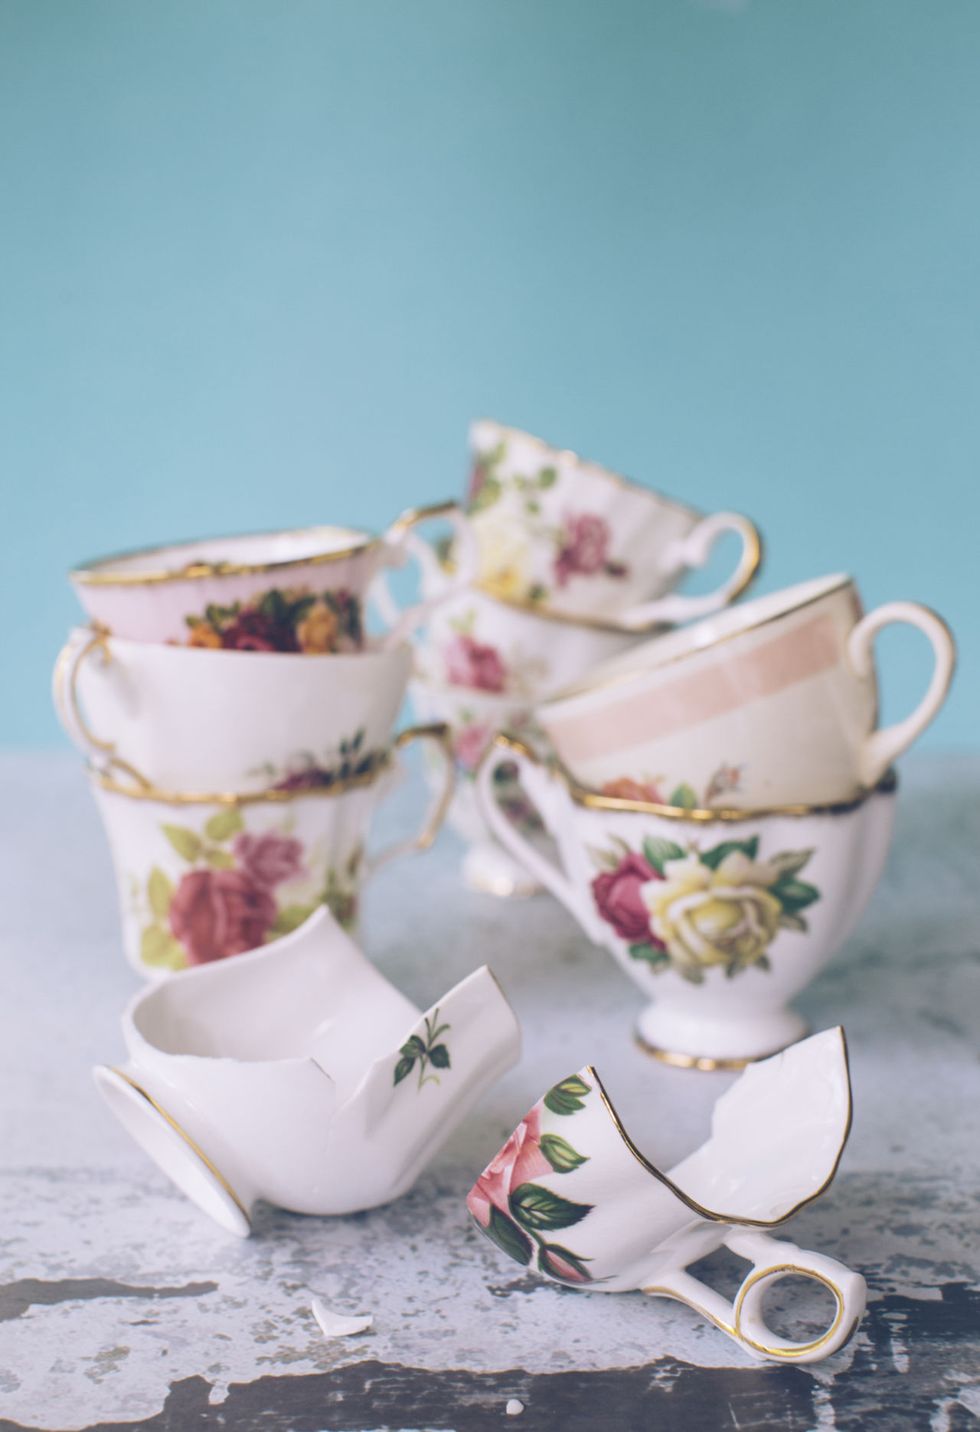 Teacup, Pink, Cup, Tableware, Drinkware, Cup, Porcelain, Serveware, Saucer, Flower, 